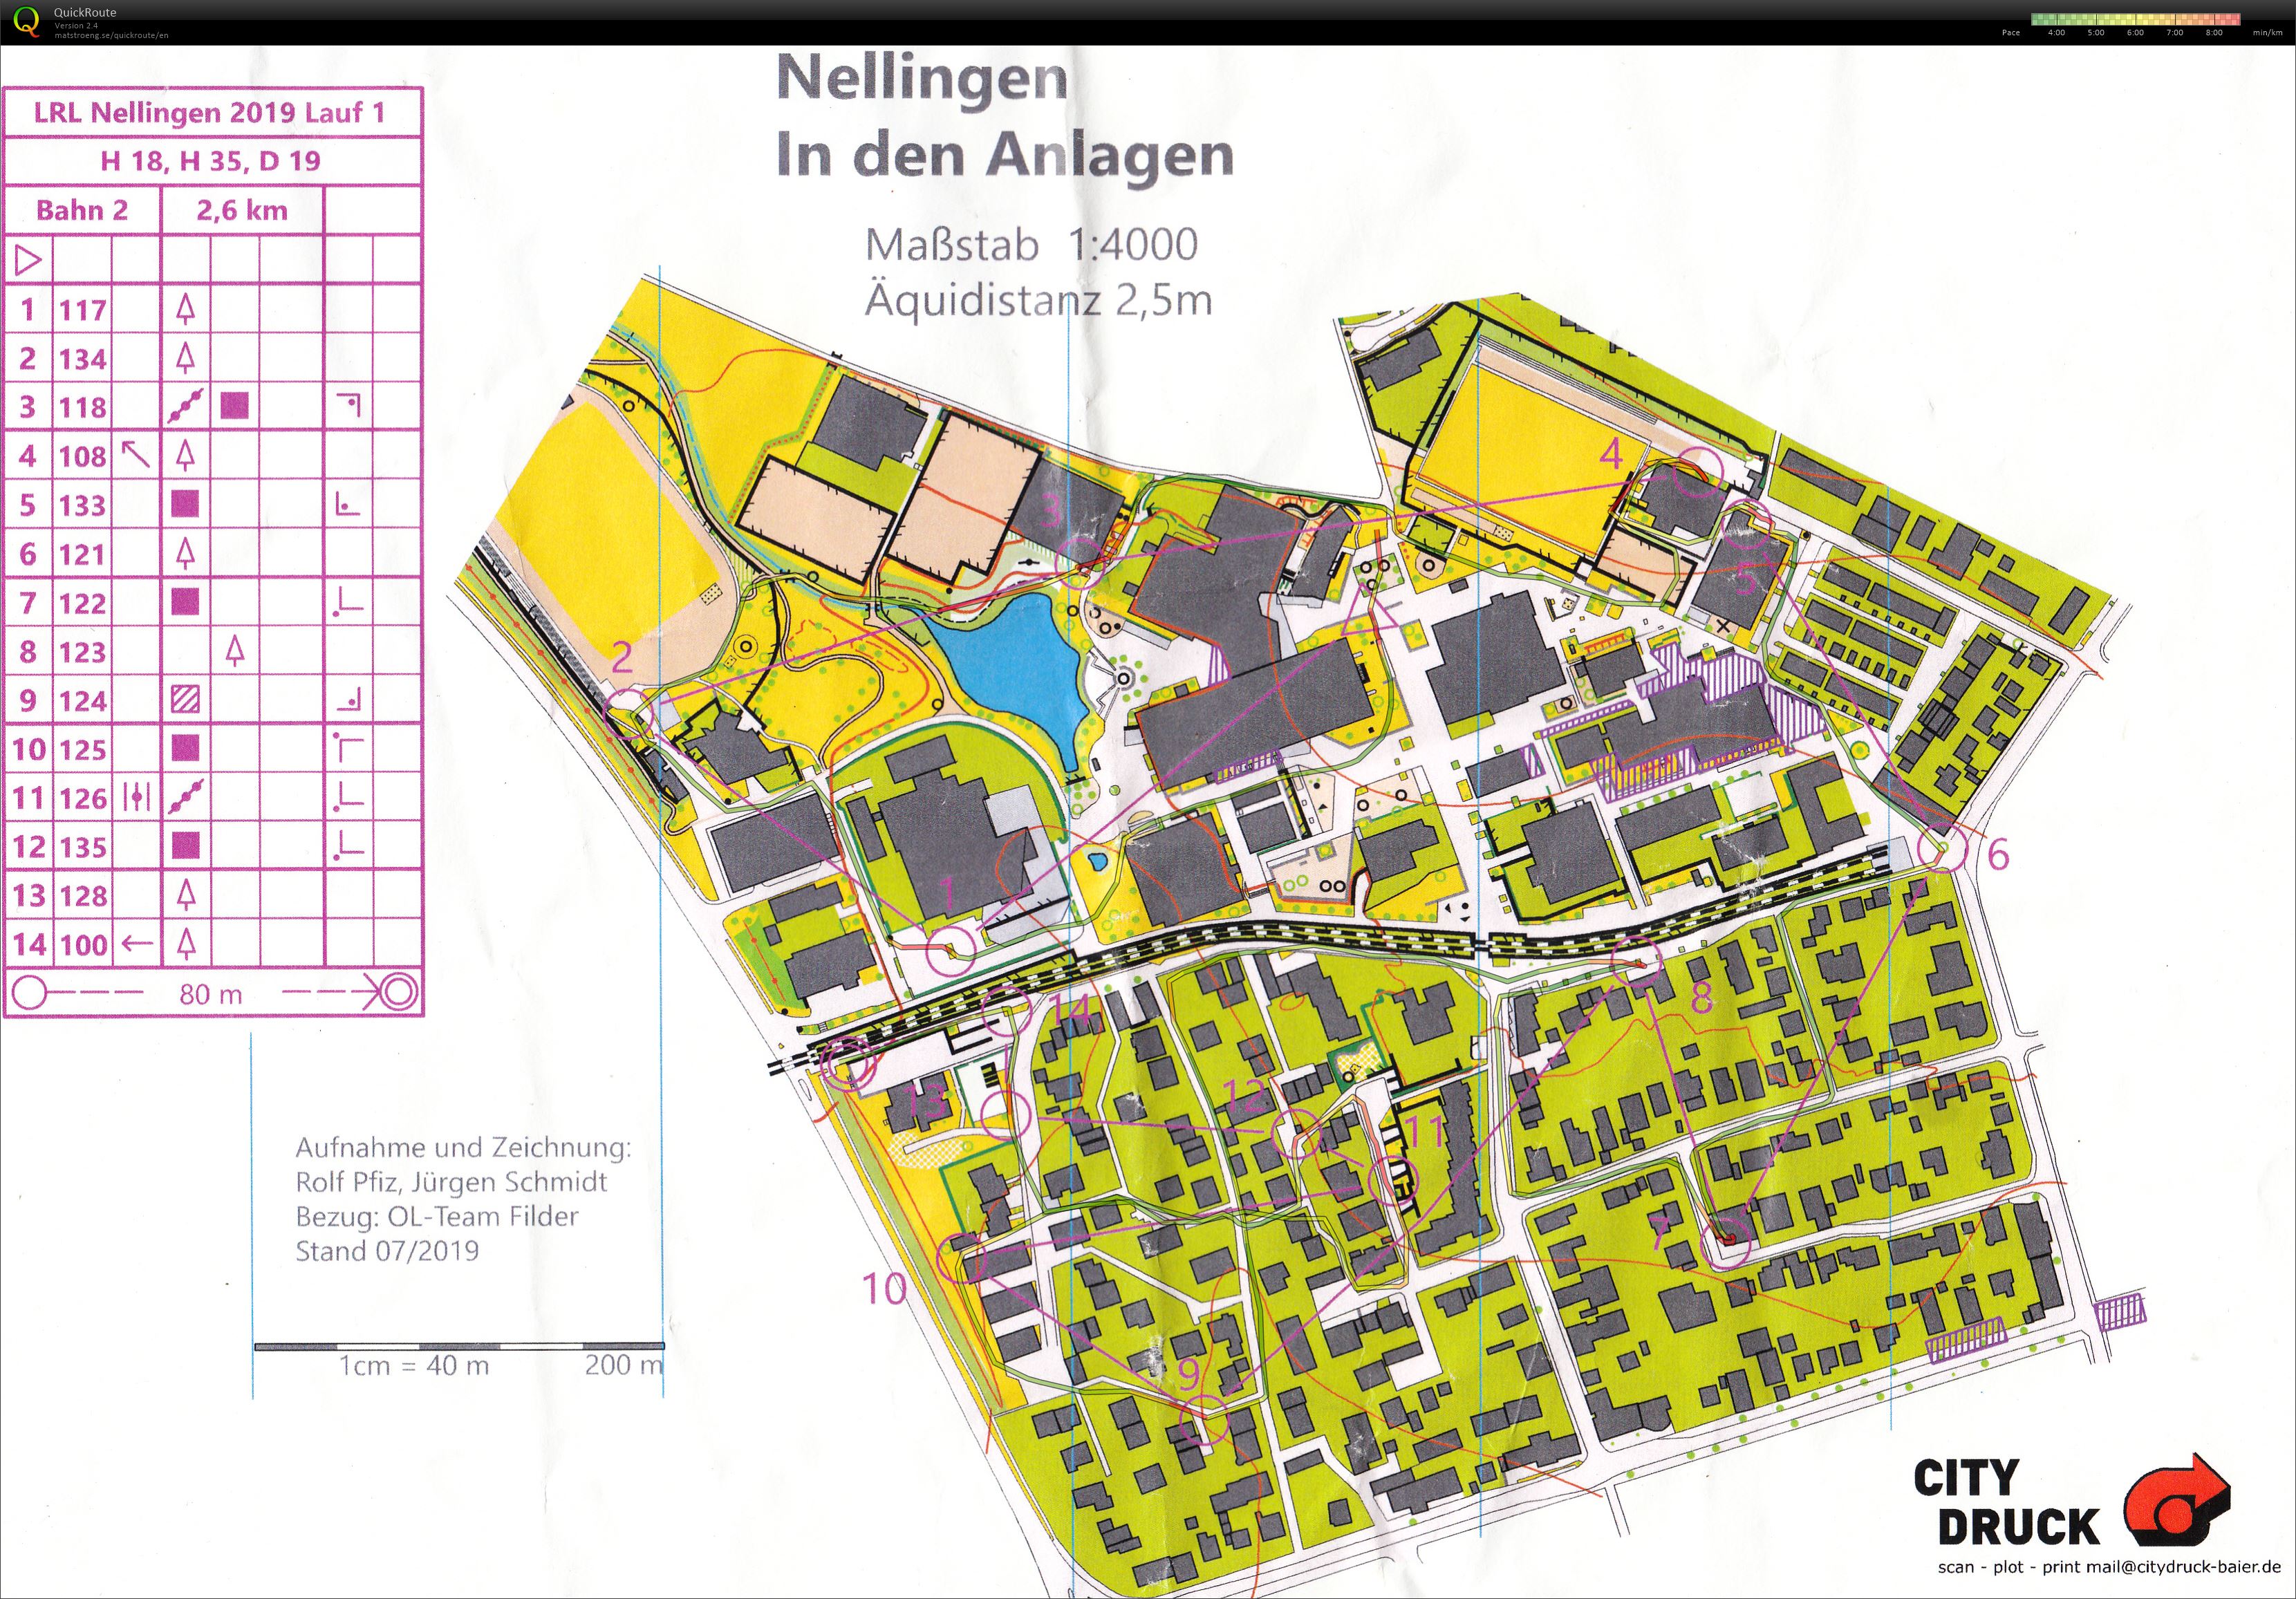 LRL Nellingen - 1 (20.07.2019)